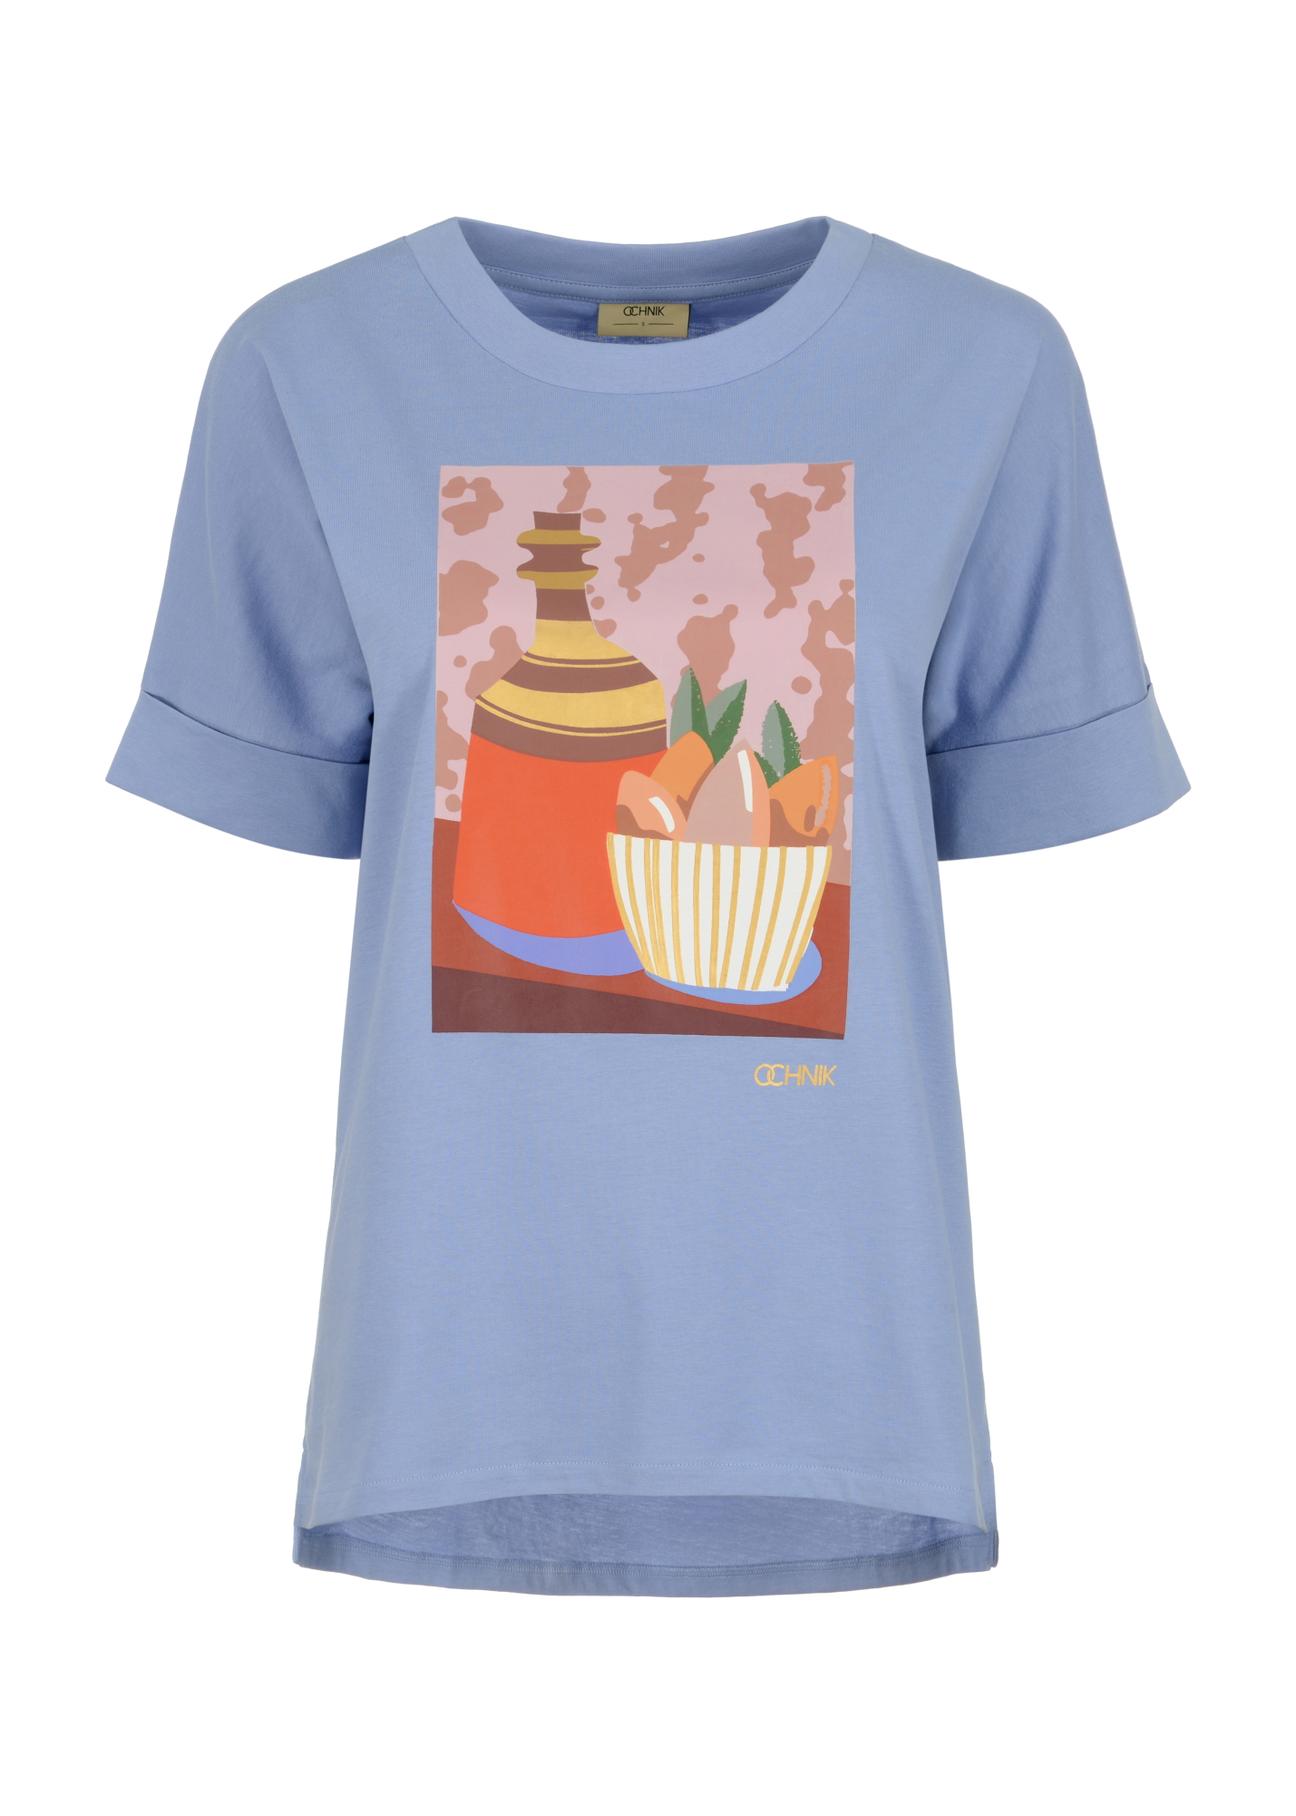 Błękitny T-shirt damski z printem TSHDT-0105-62(W23)